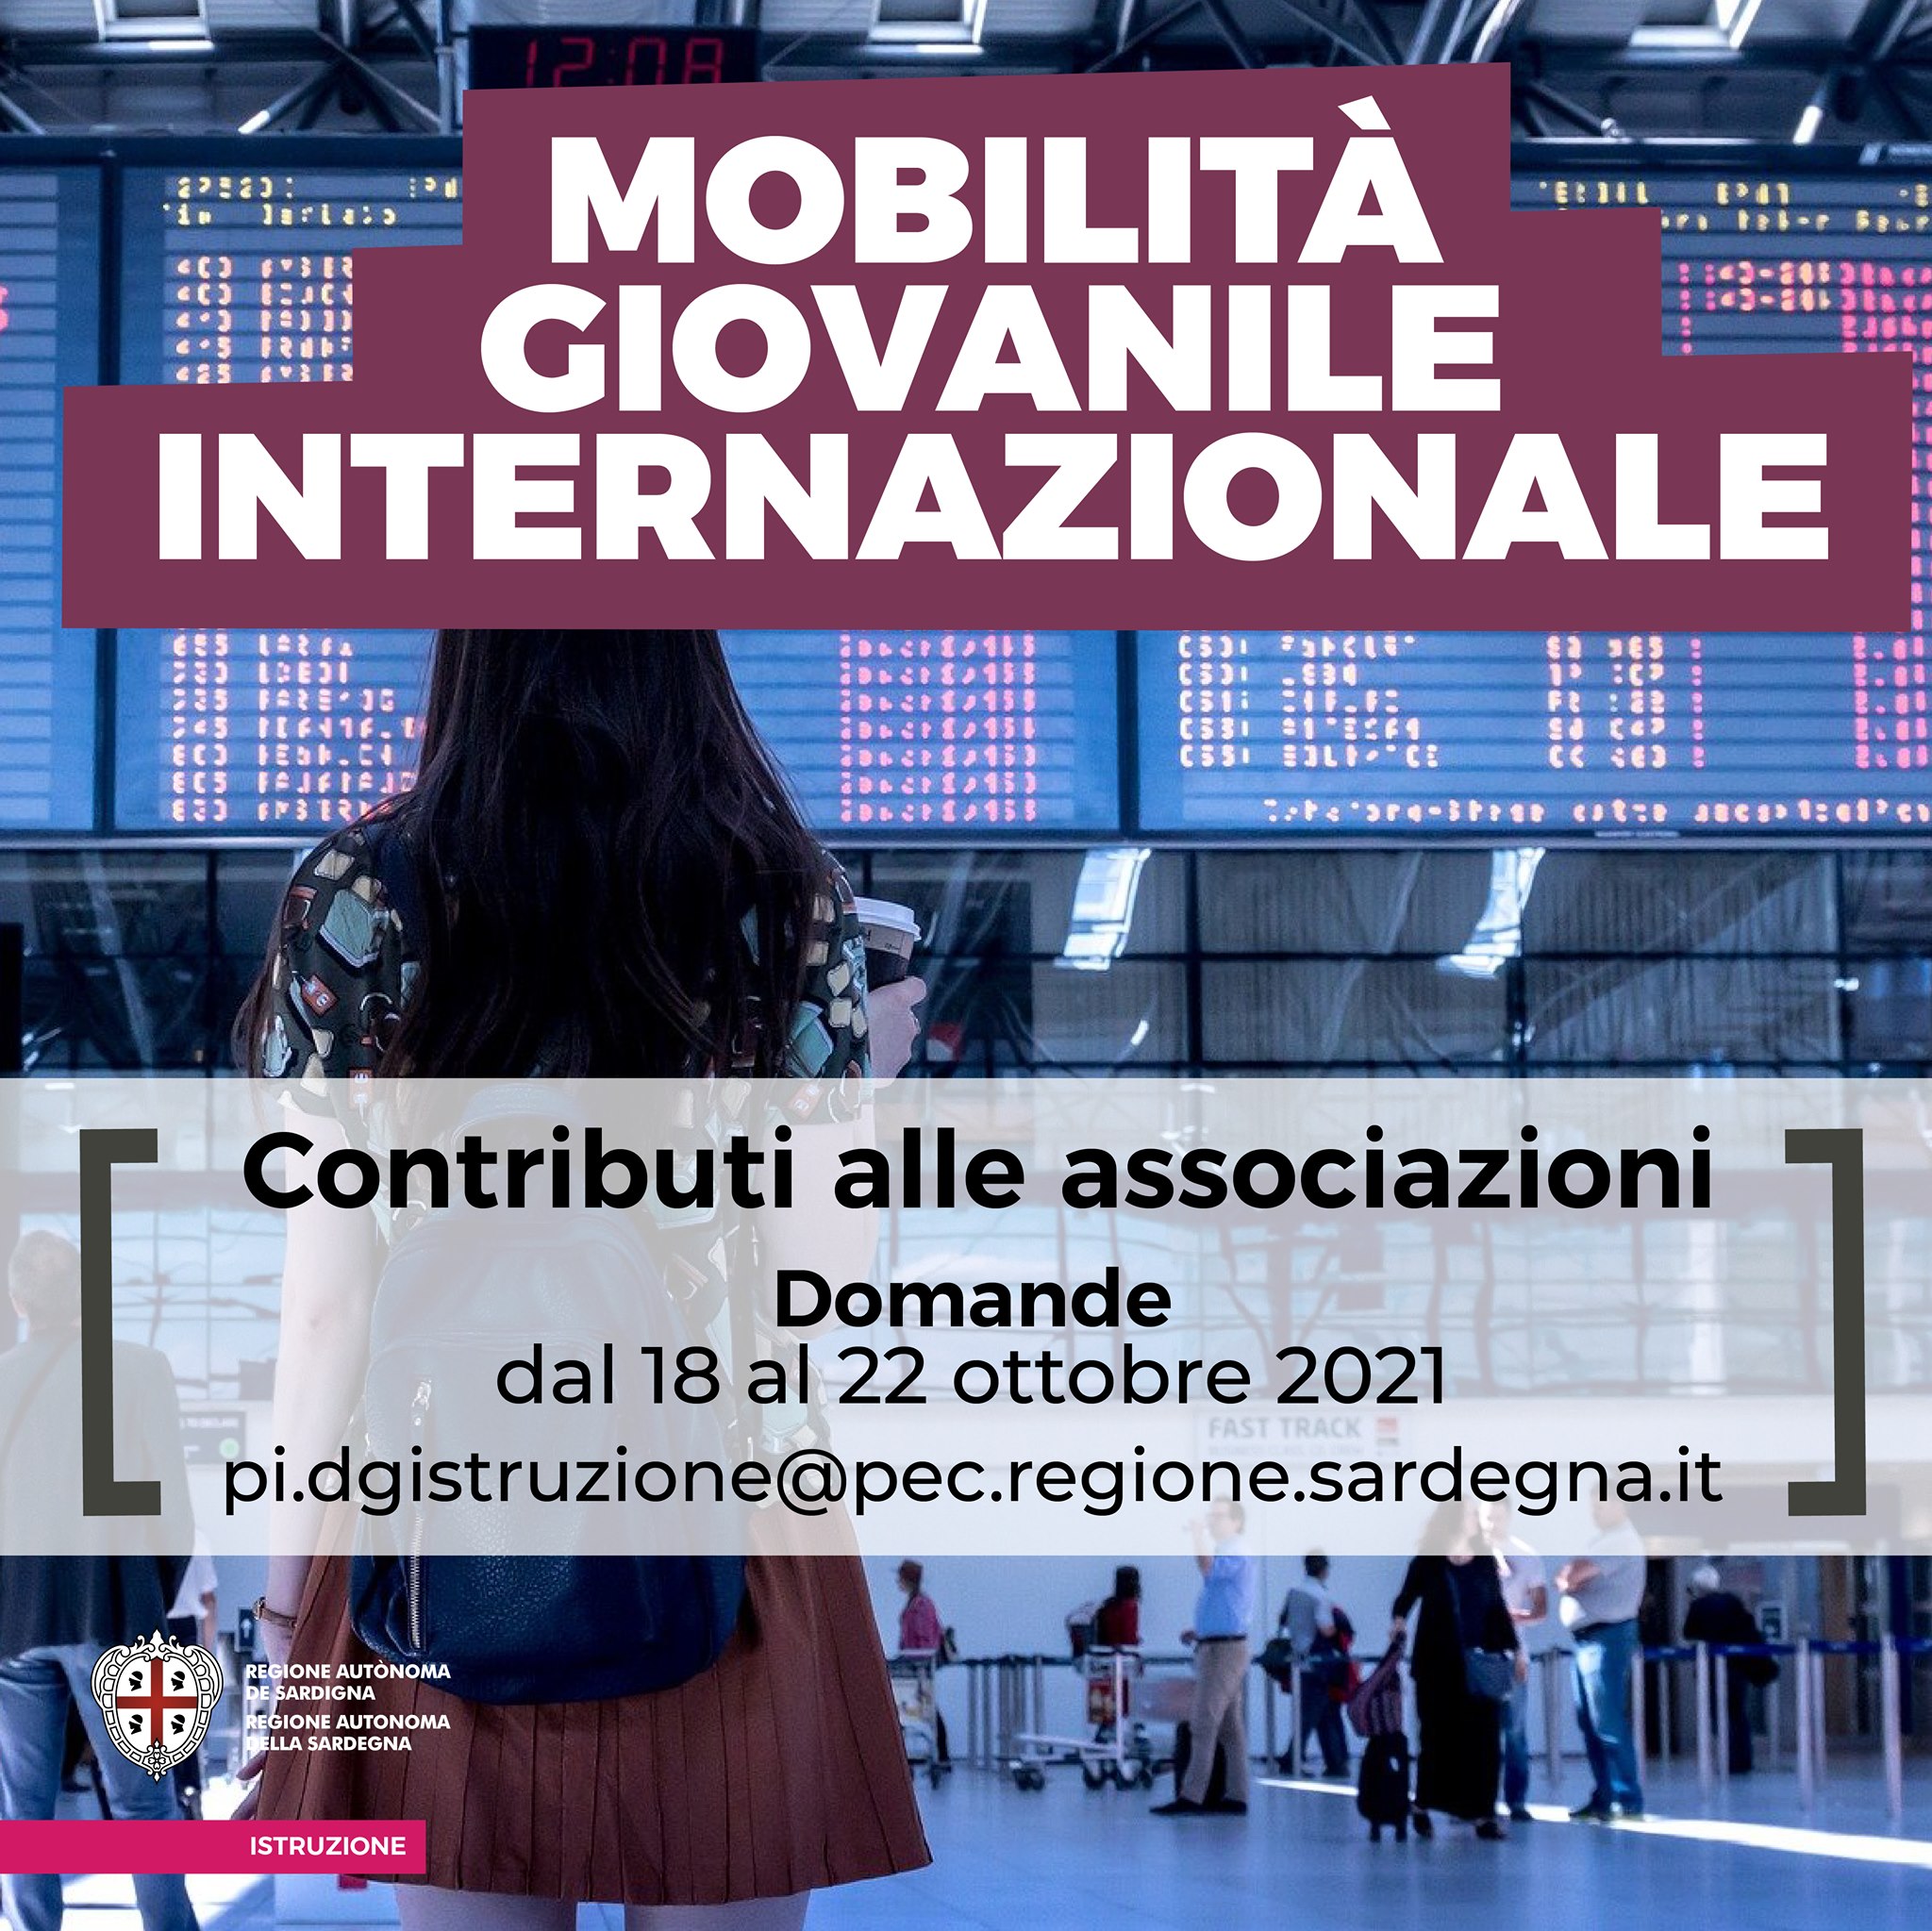 Mobilità giovanile internazionale